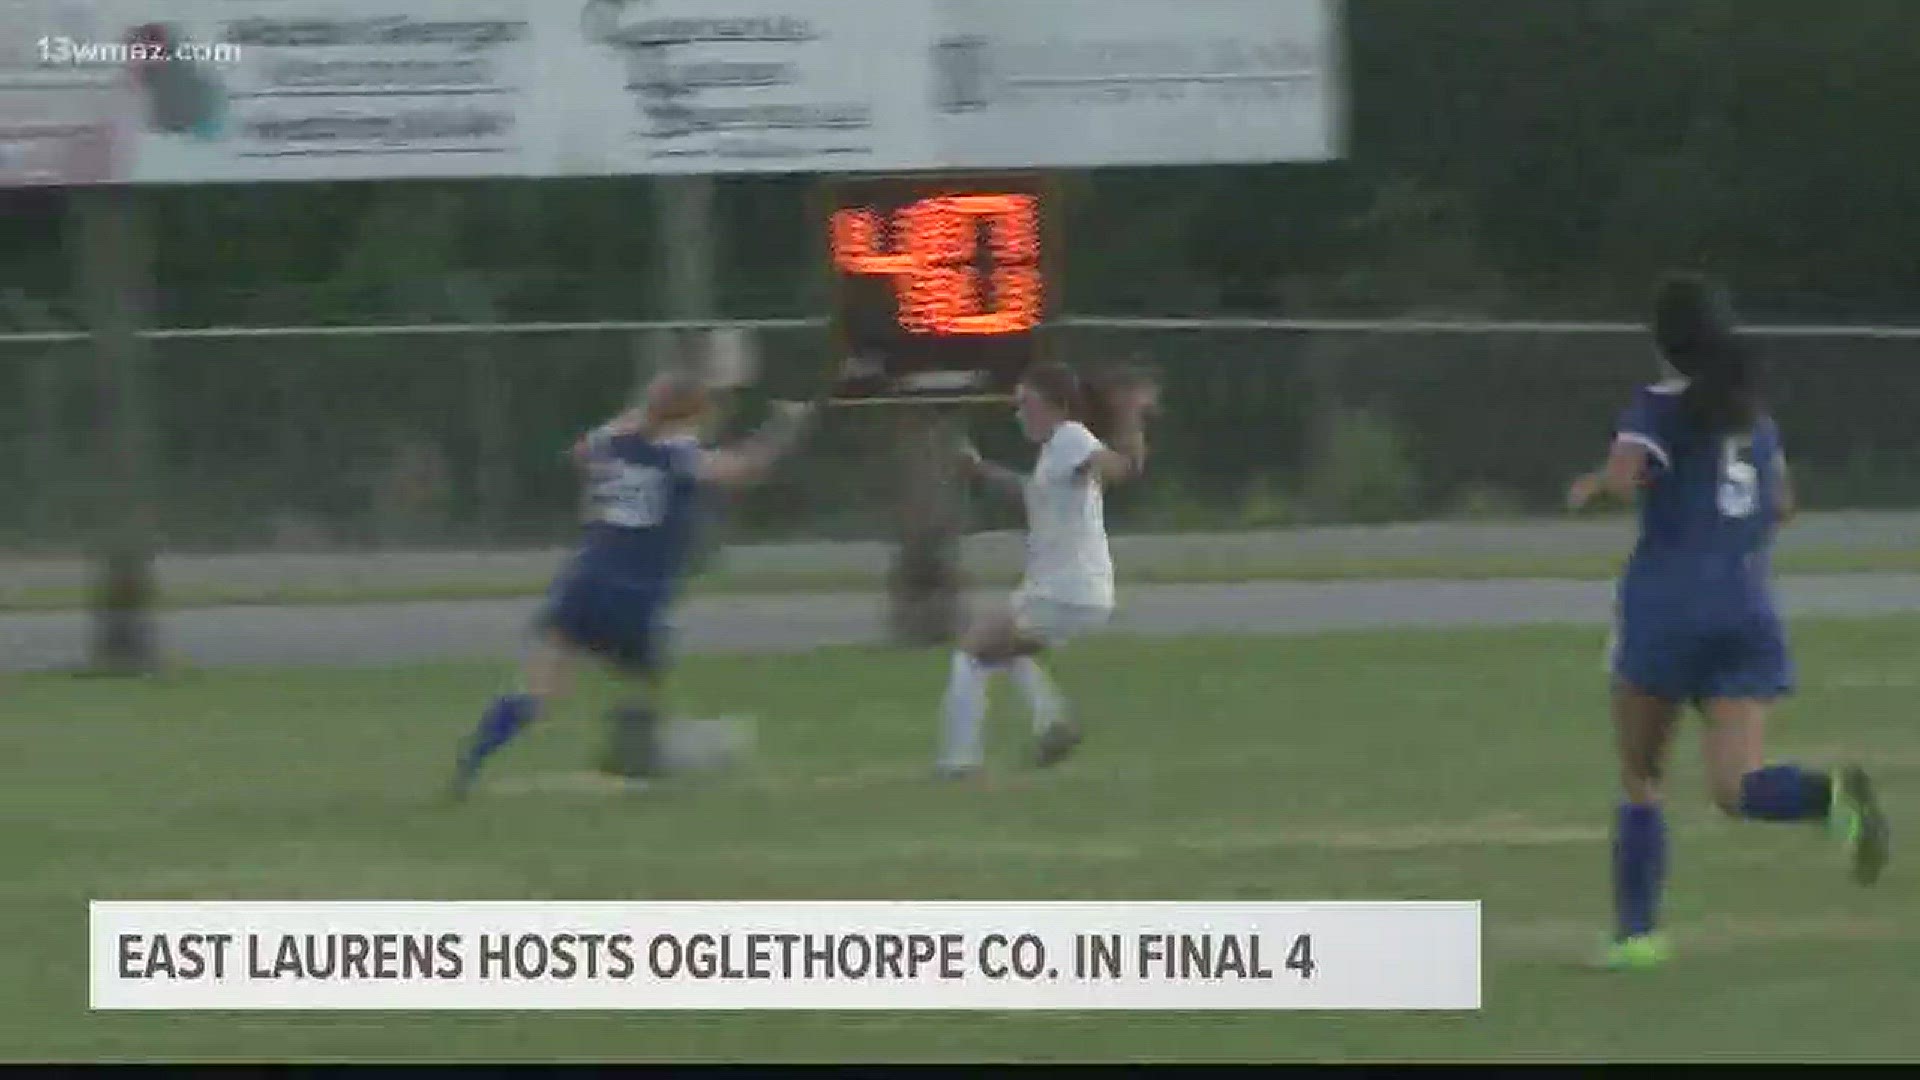 East Laurents hosts Oglethorpe County in Final 4